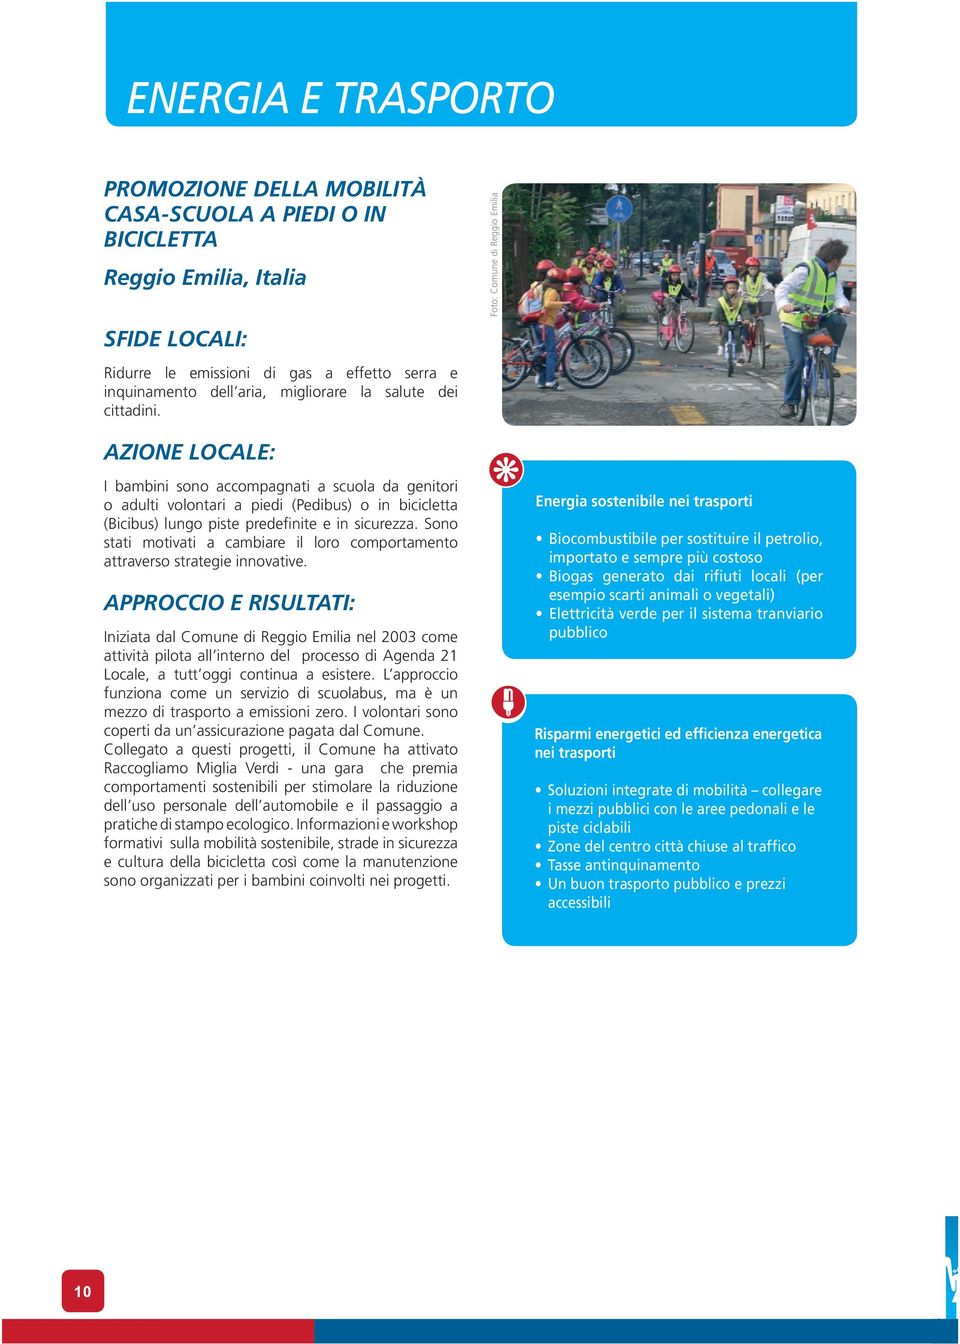 Foto: Comune di Reggio Emilia AZIONE LOCALE: I bambini sono accompagnati a scuola da genitori o adulti volontari a piedi (Pedibus) o in bicicletta (Bicibus) lungo piste predefinite e in sicurezza.